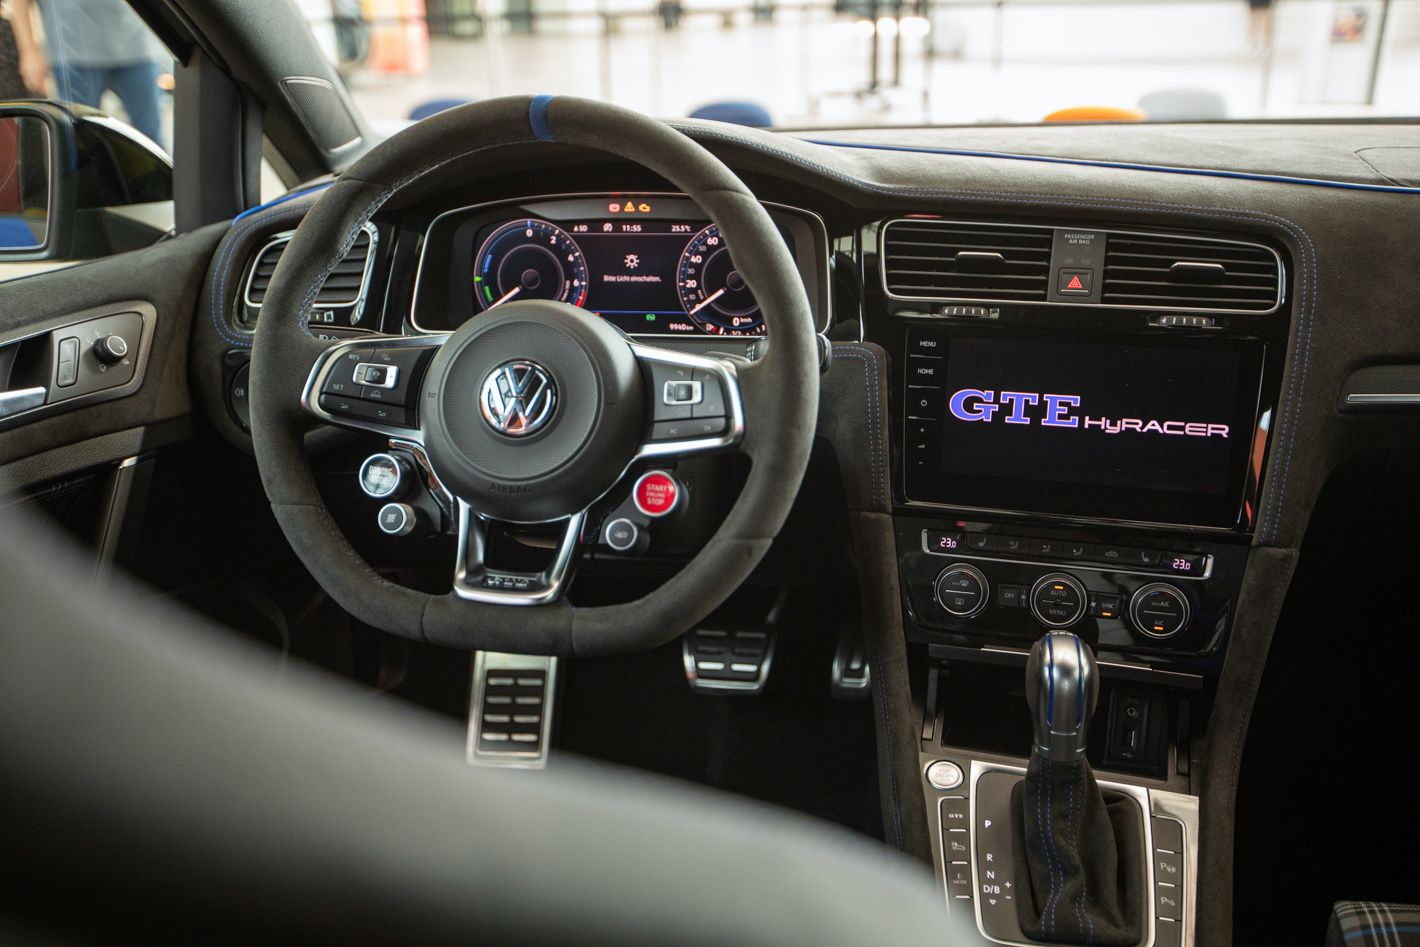 VW Golf GTE HyRACER Concept 3